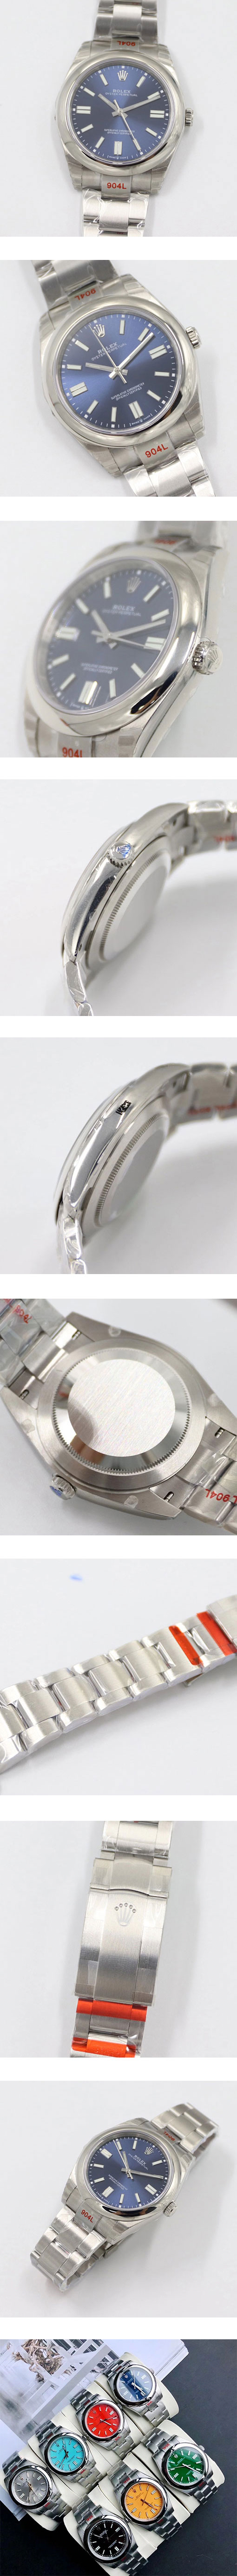 ハイランク腕時計ロレックスオイスター パーペチュアル M124300-0003(904L素材)